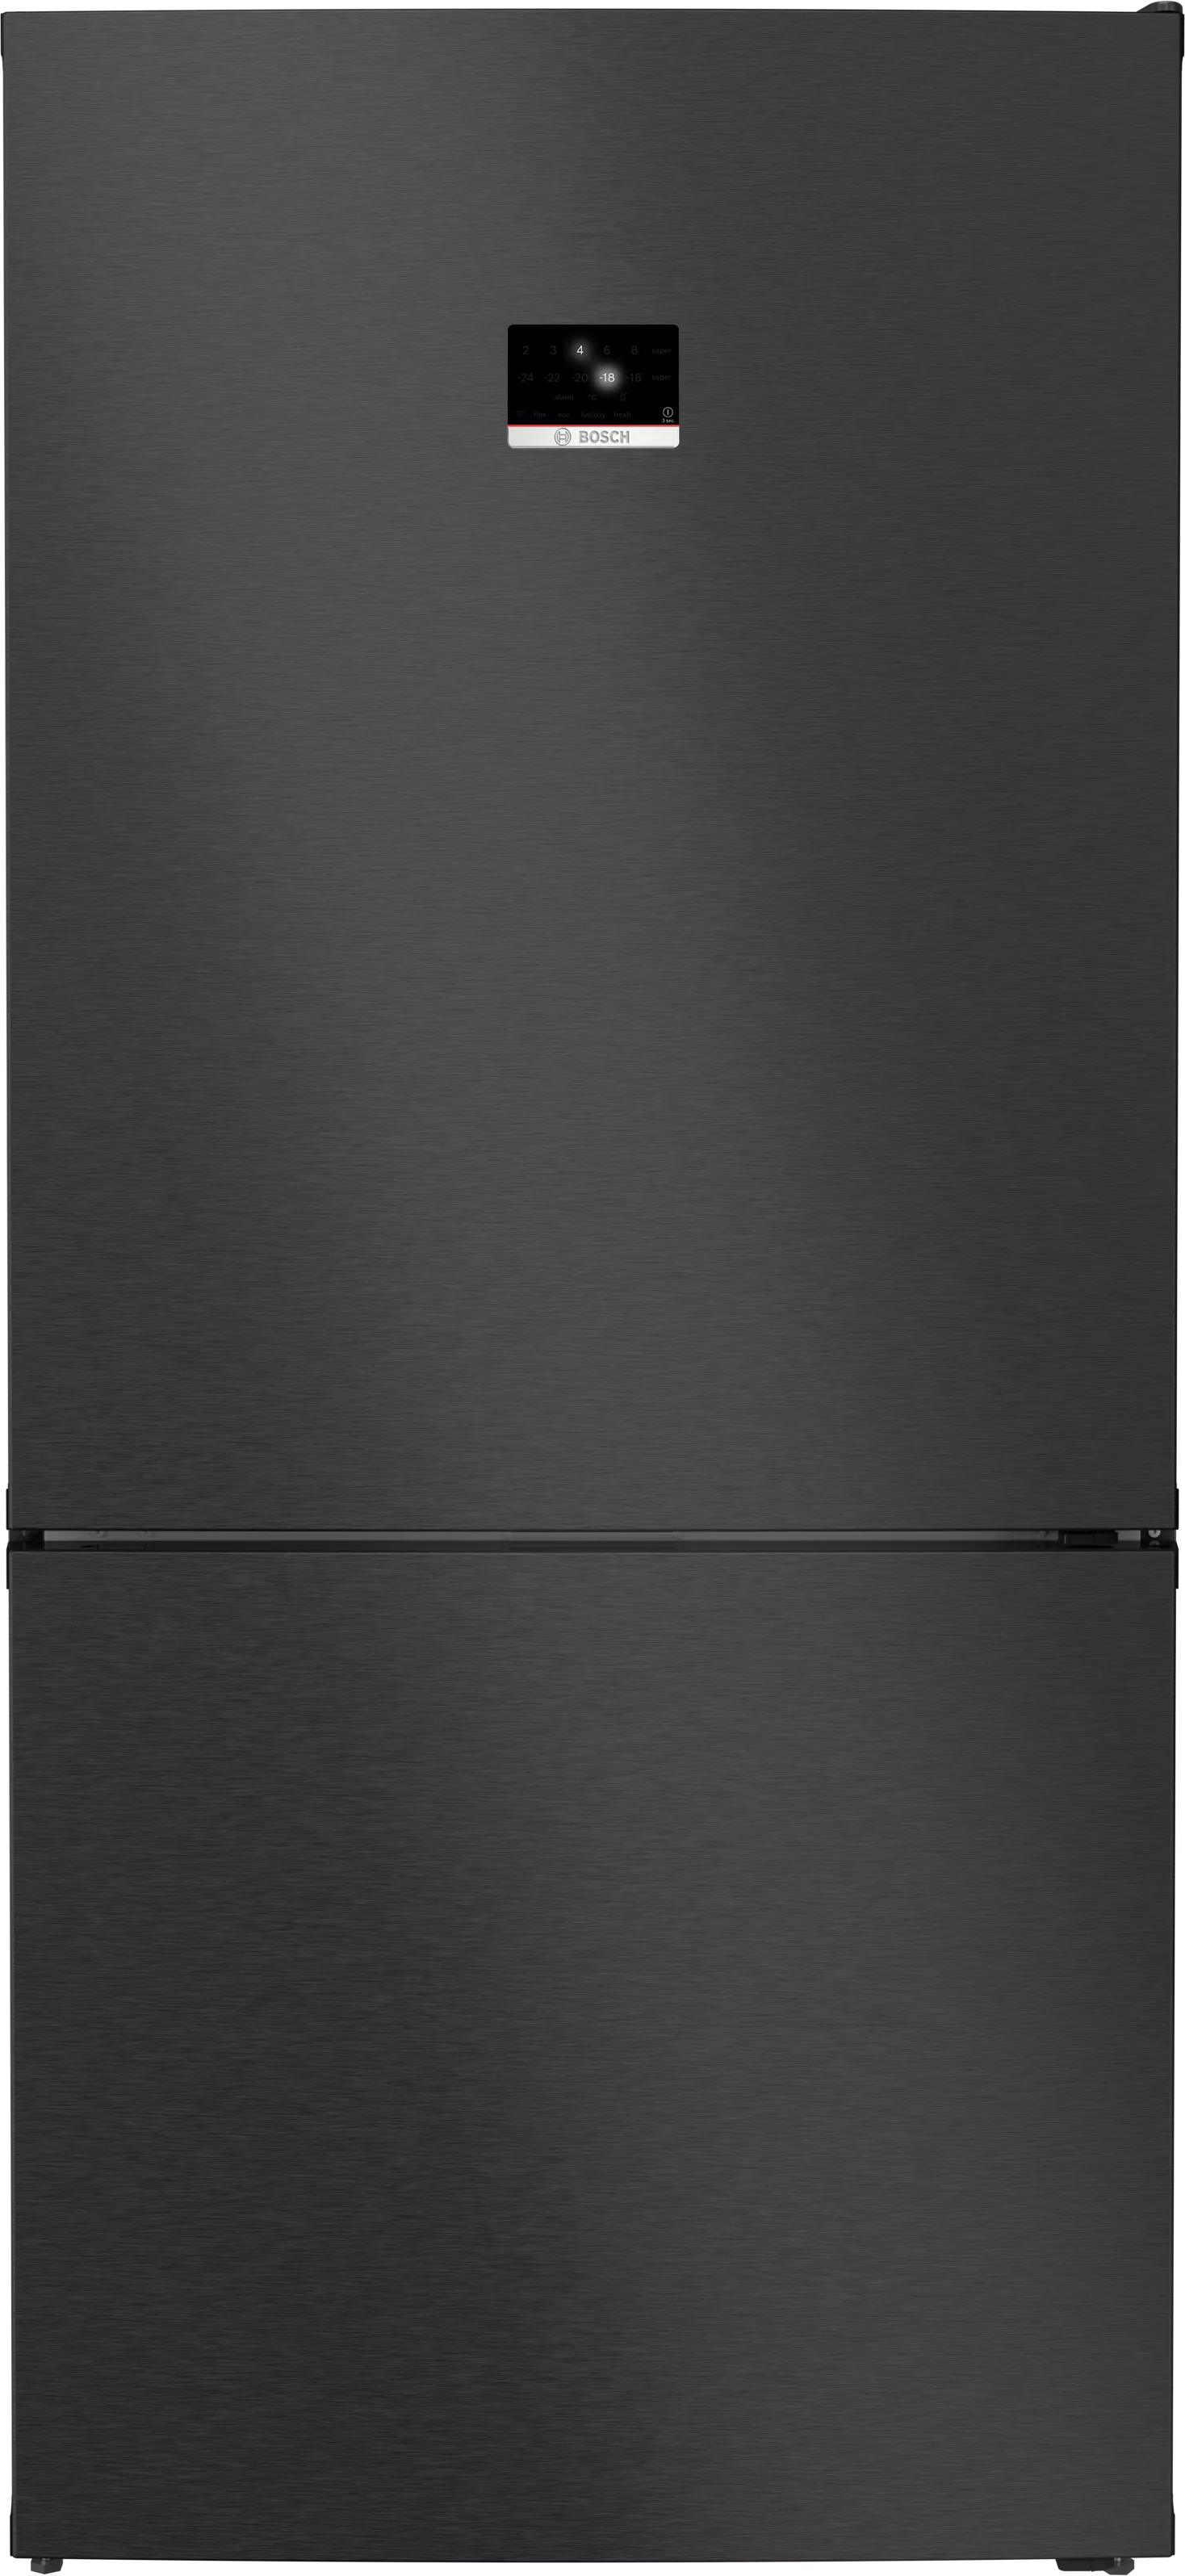 Serie 8 Freistehende Kühl-Gefrier-Kombination mit Gefrierbereich unten 186 x 86 cm Edelstahl schwarz 